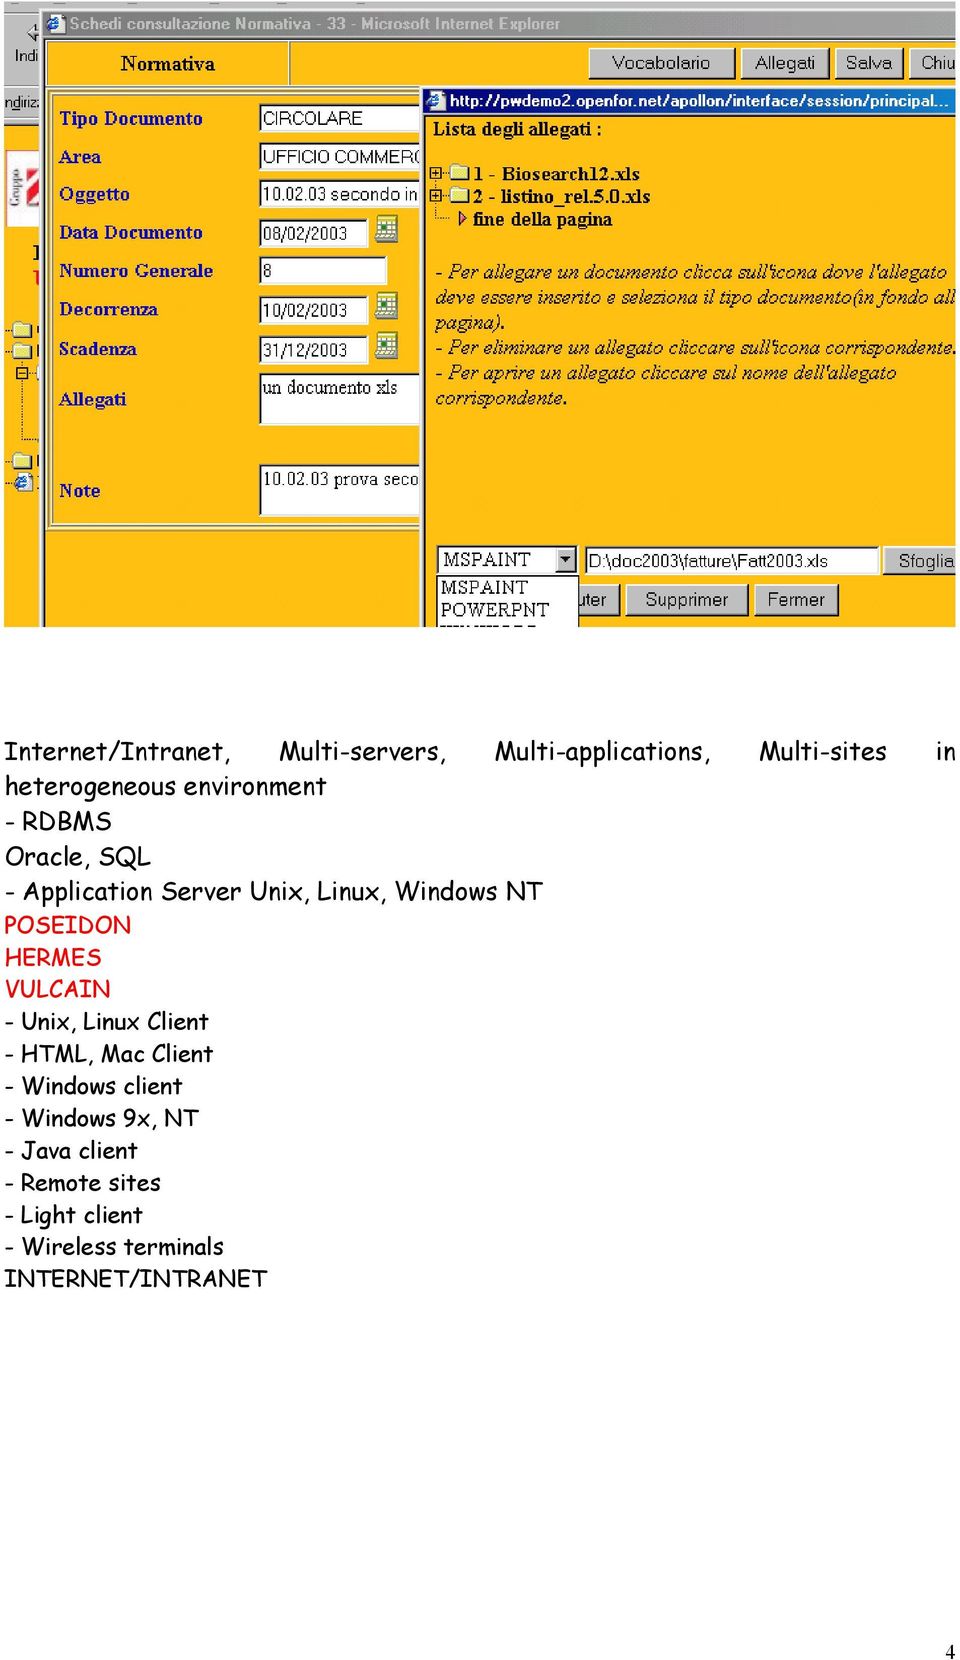 HERMES VULCAIN - Unix, Linux Client - HTML, Mac Client - Windows client - Windows 9x,